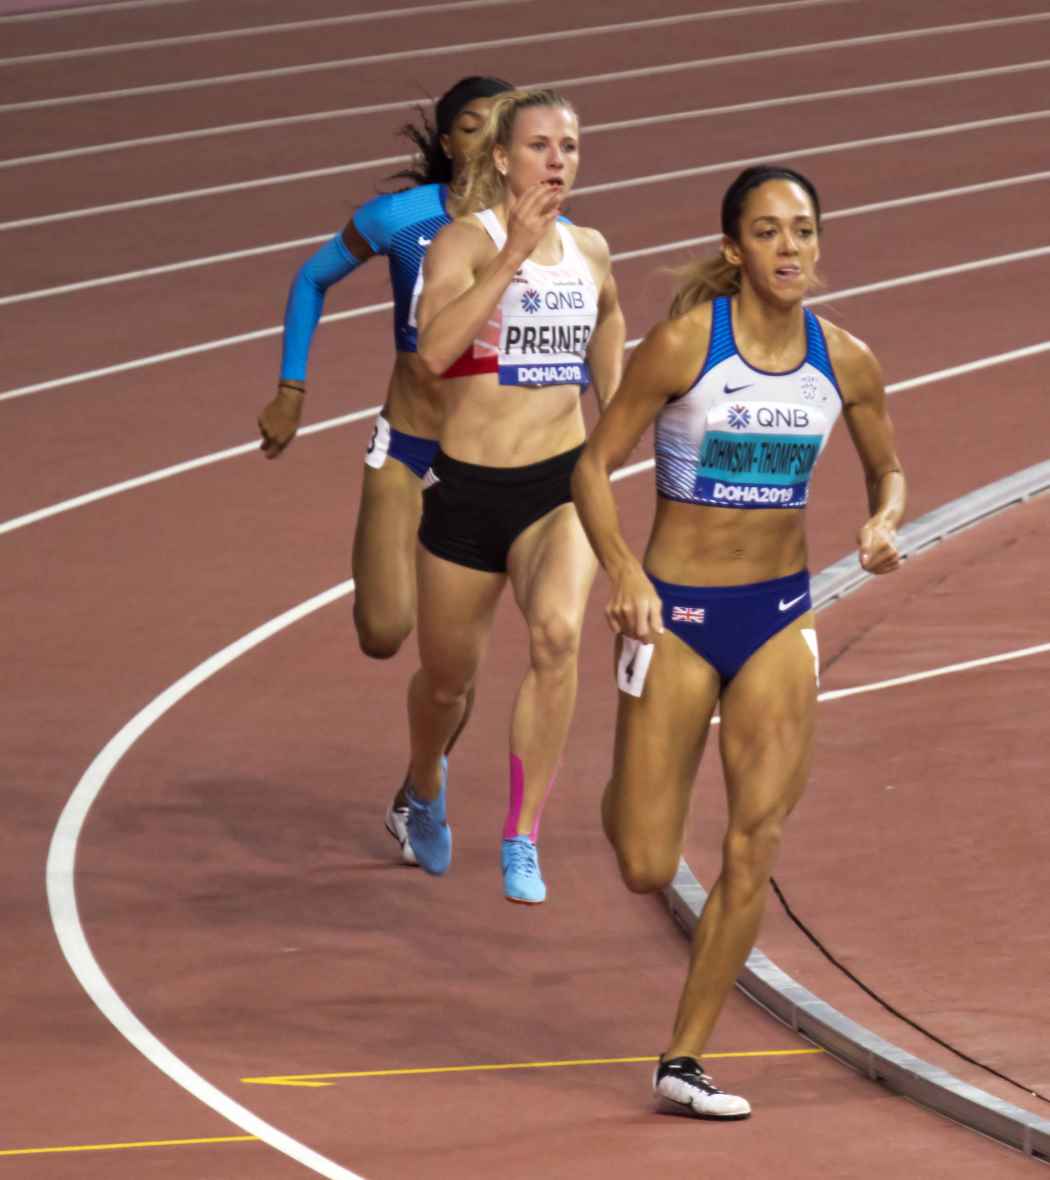 Udsigt værksted Stratford på Avon 2019 World Athletics Championships – Women's heptathlon - Wikipedia